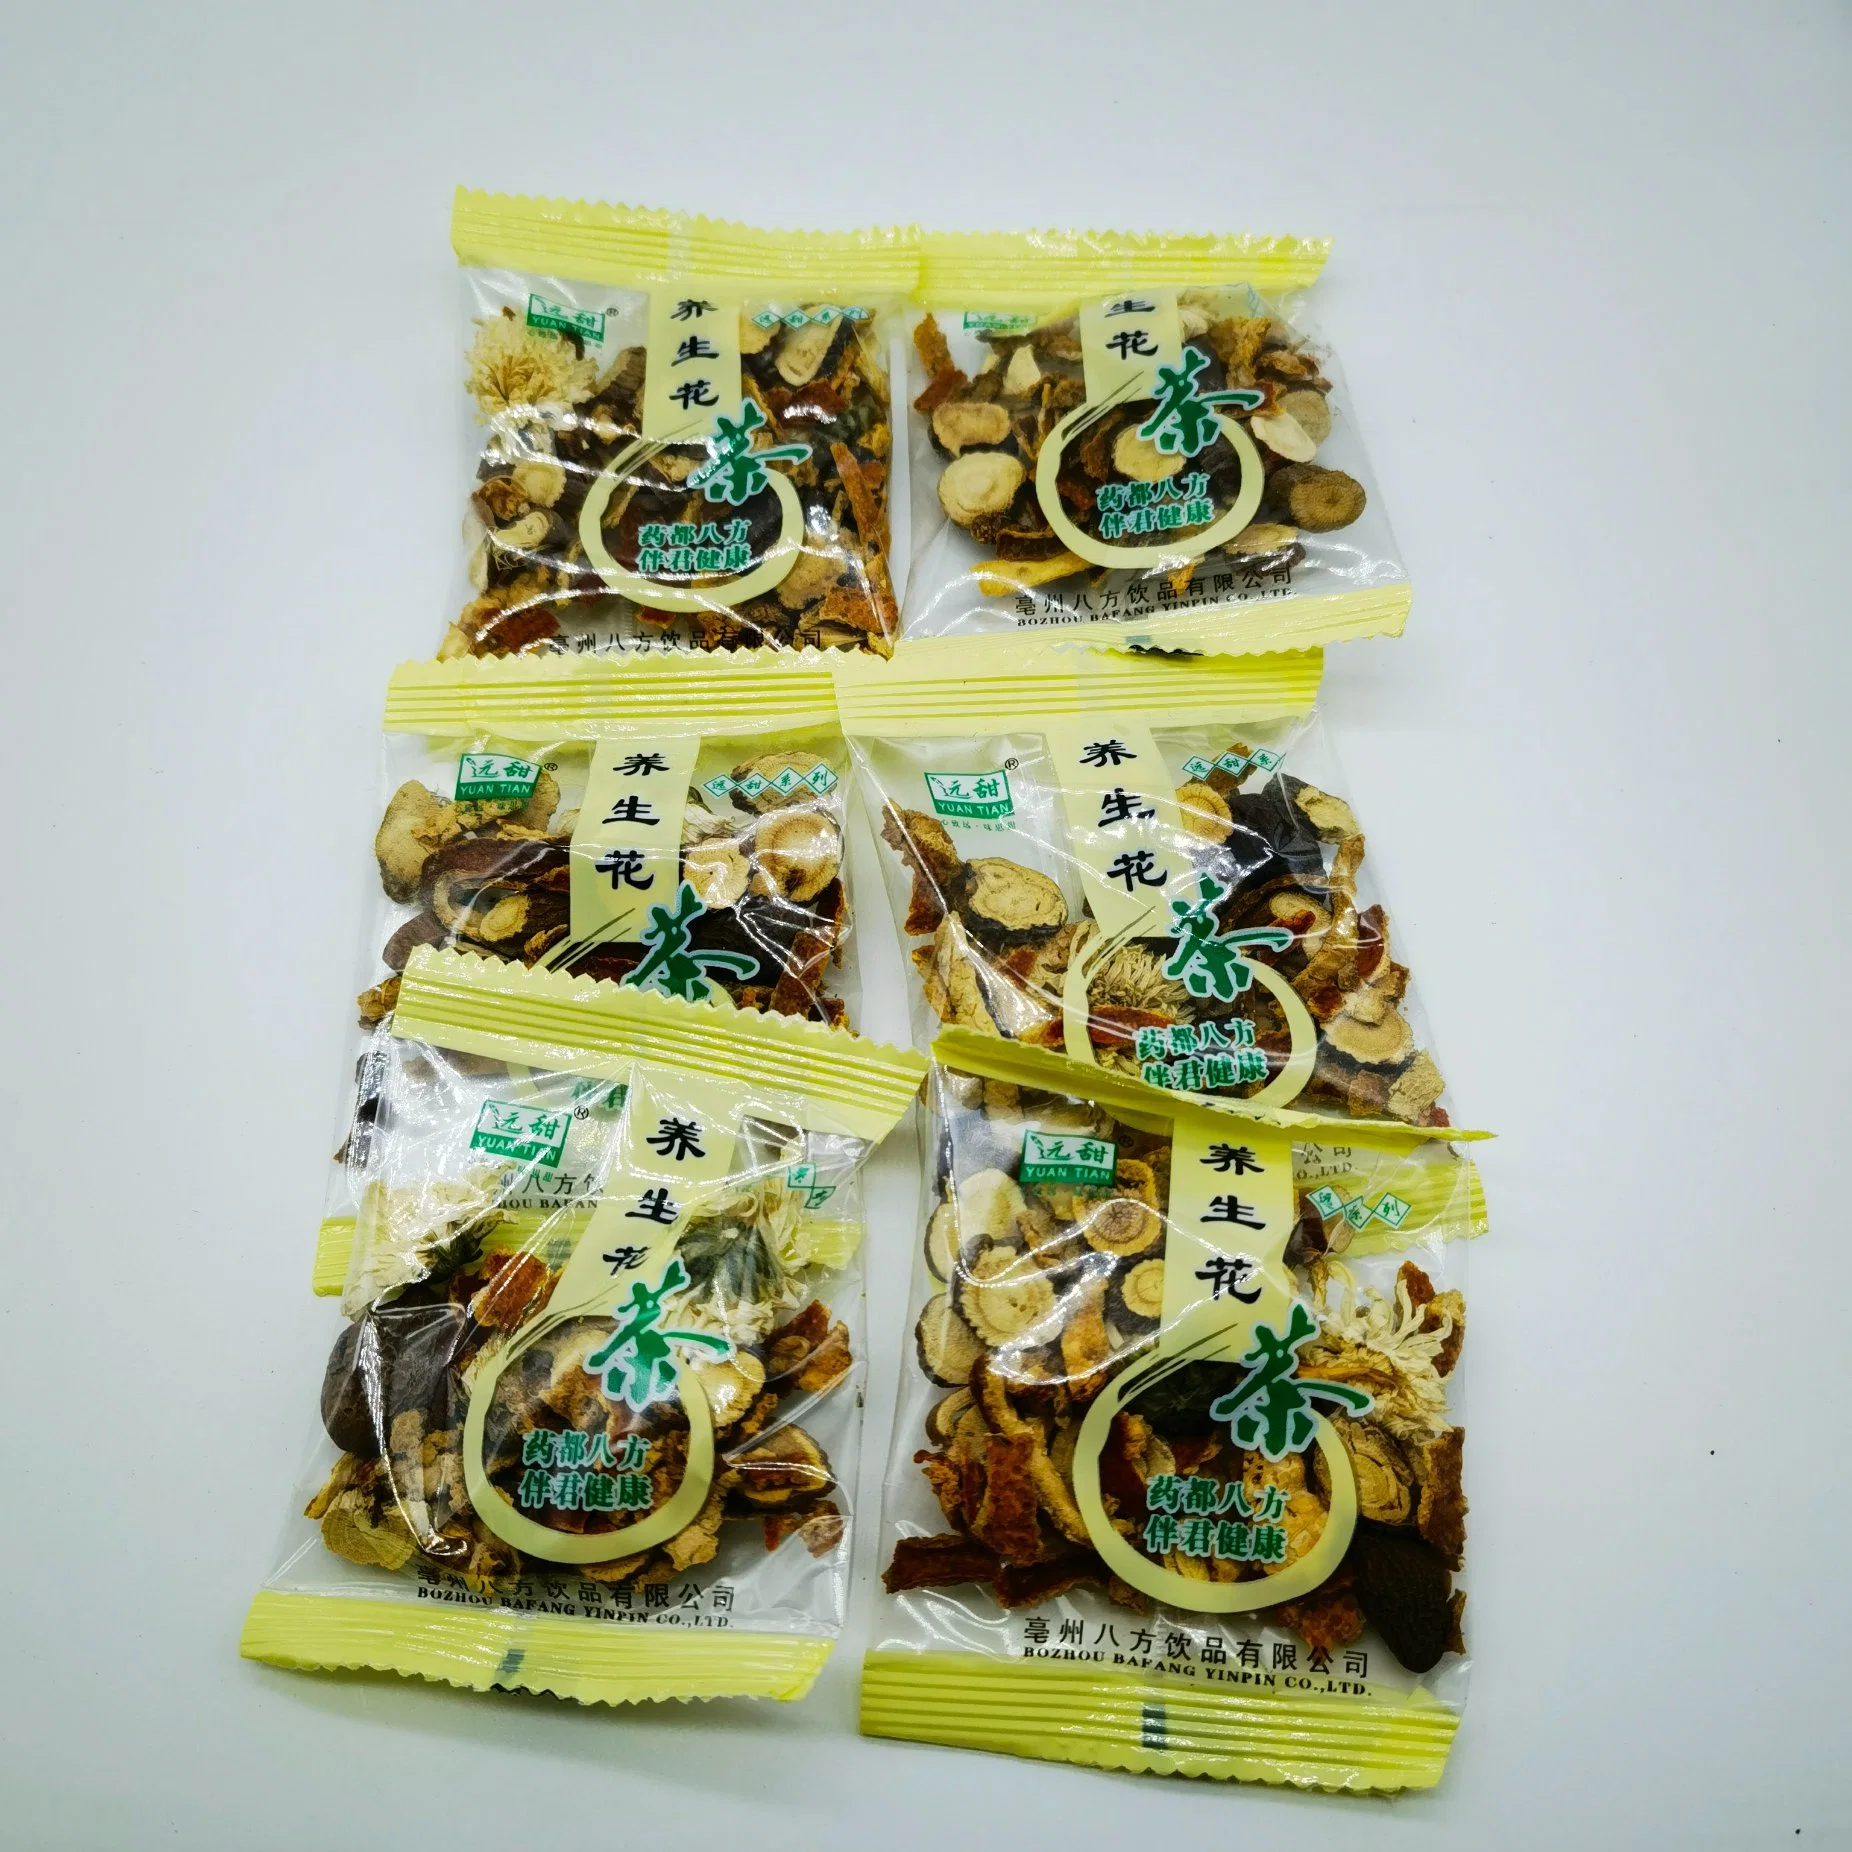 Янг Шэн Ча Подарочный пакет Китайский чай смешанной травяной медицины Пакет для здоровья